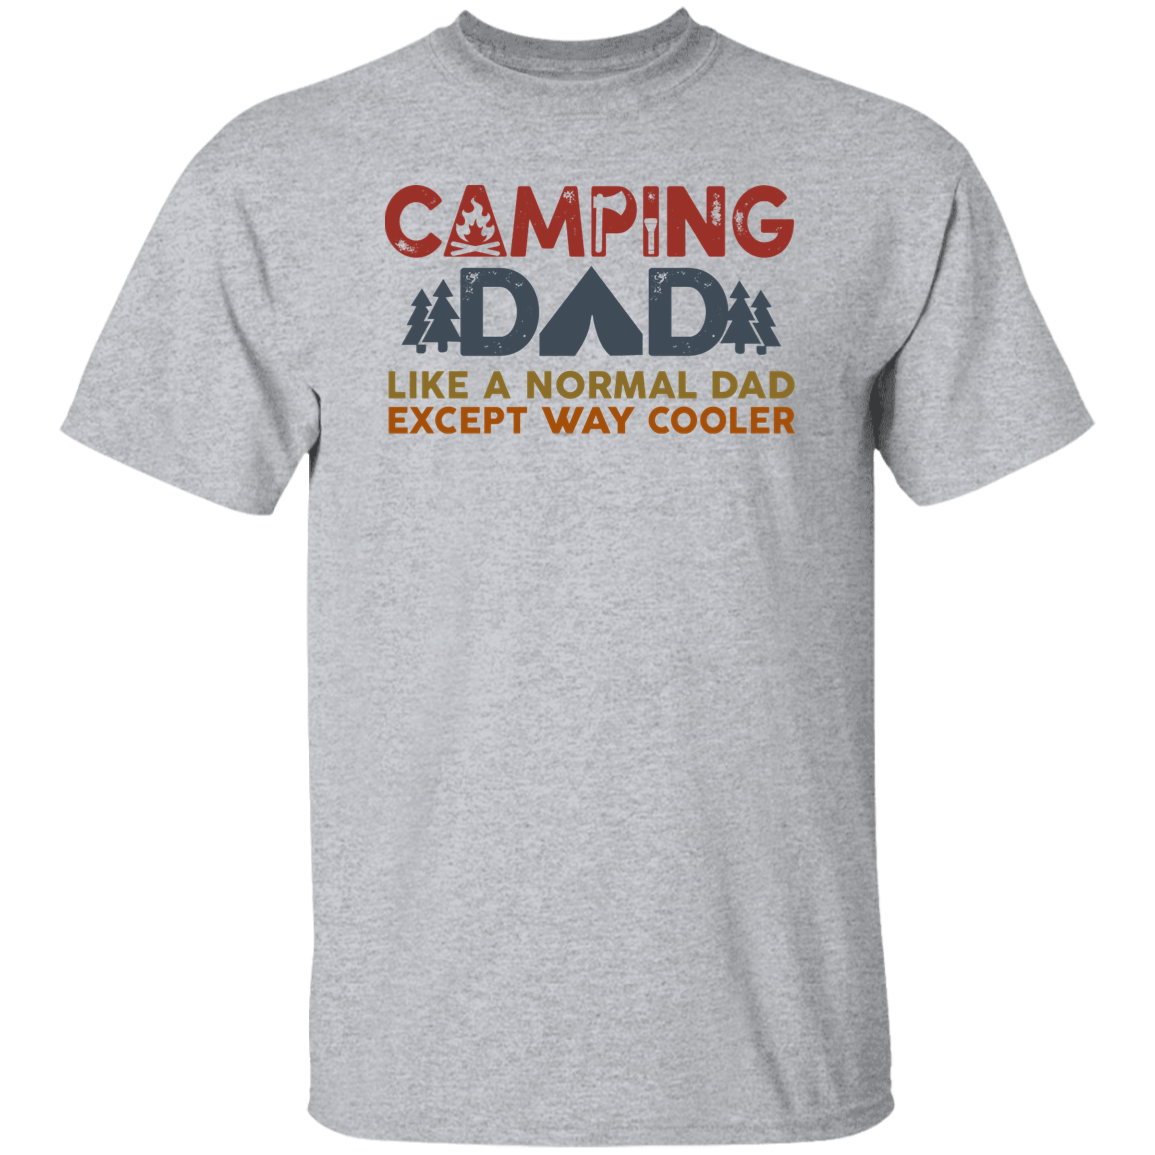 Camping Dad T-Shirt